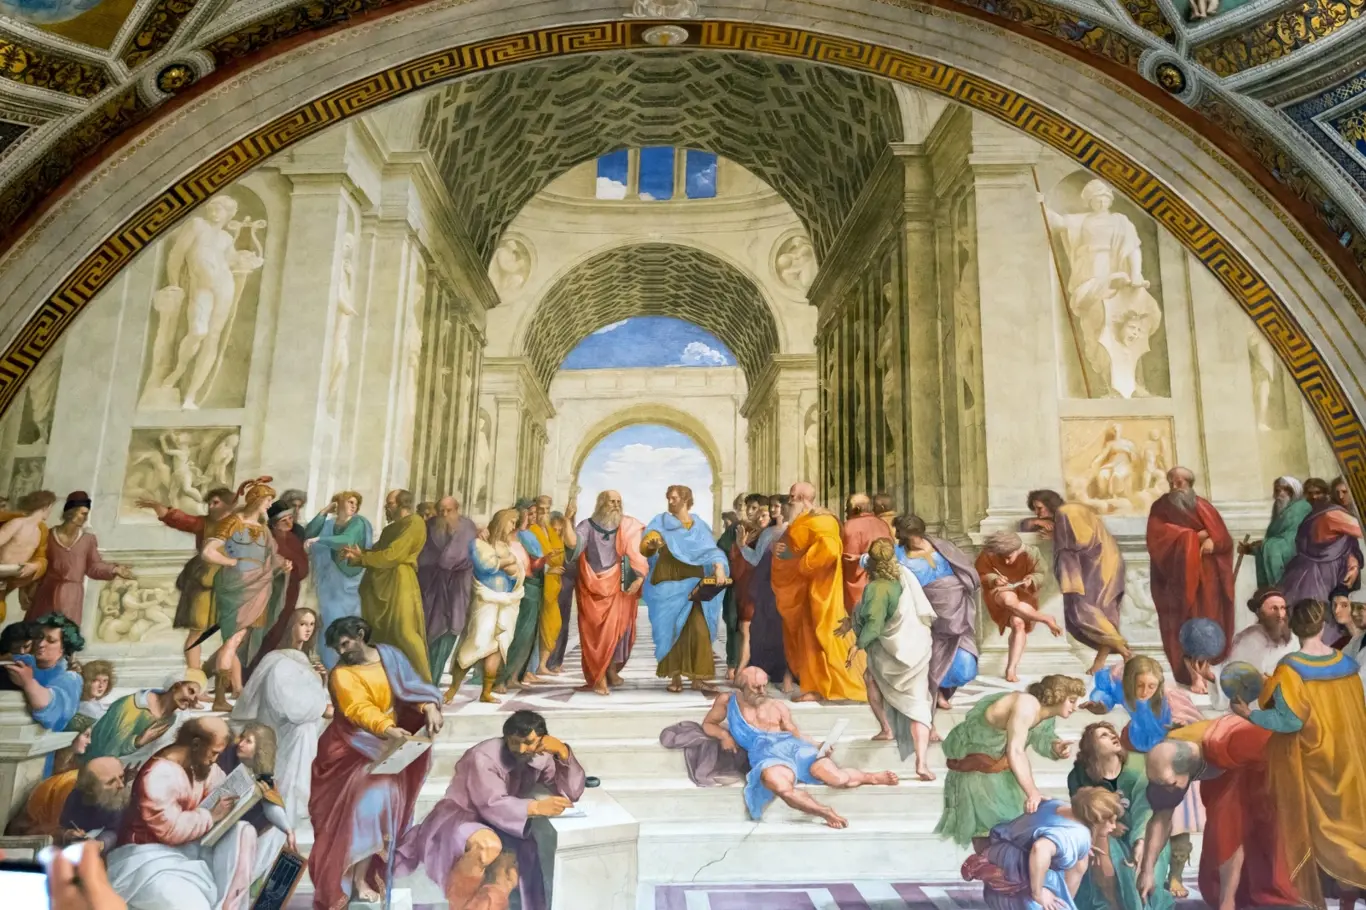 Athénská škola, Raffaelova renesanční malba ve Stanze di Raffaello, Vatikánské muzeum, Itálie. Aristoteles a Platón mezi dalšími filozofy uprostřed slavné nástěnné fresky.